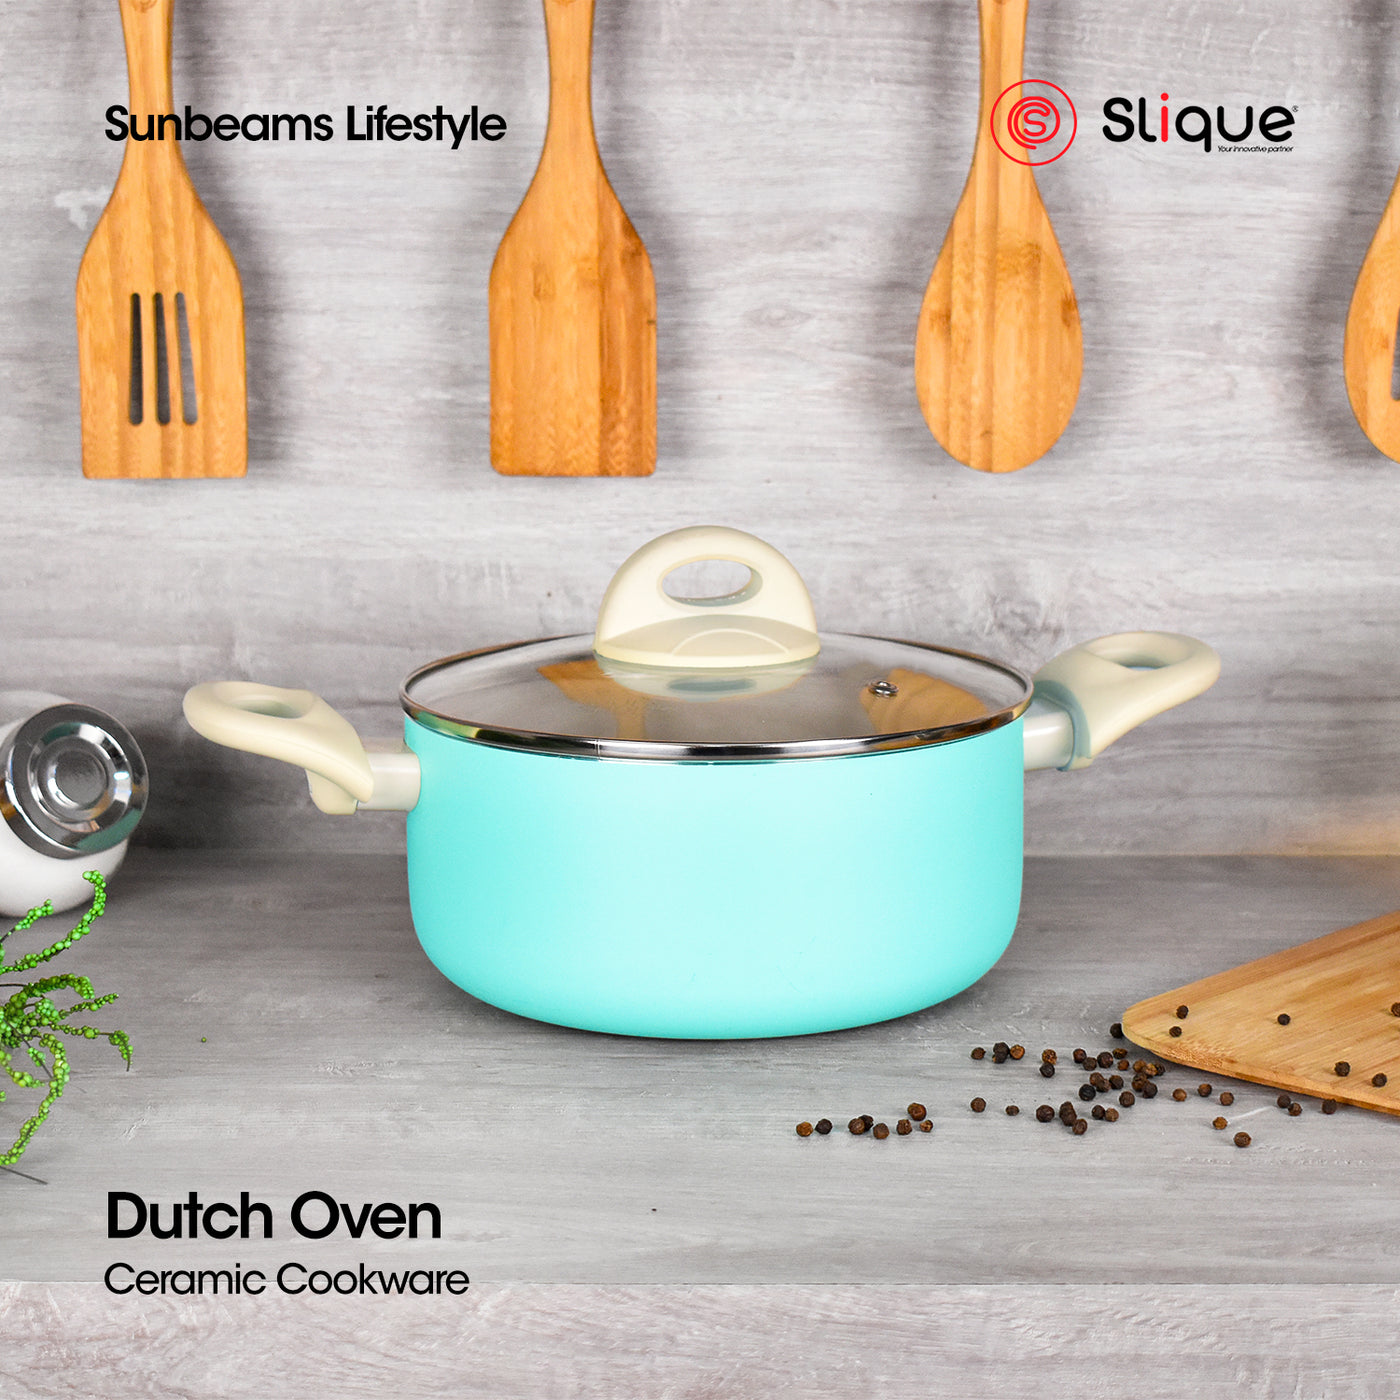 SLIQUE Premium Ceramic Dutch Oven 20cm/24cm